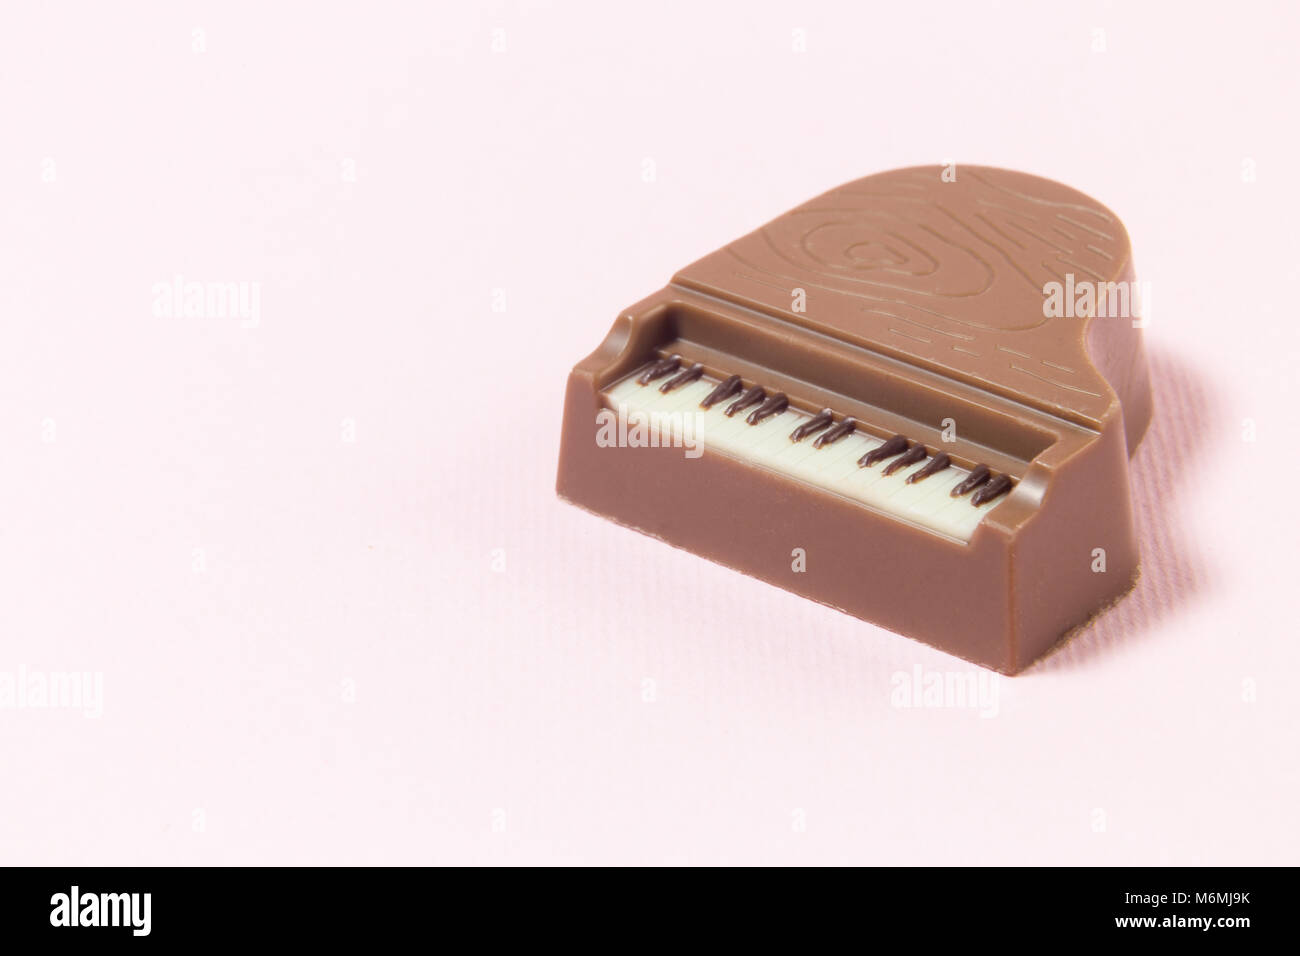 Nahaufnahme von Schokolade Praline mini Piano gegen Pastell rosa  Hintergrund. Minimalen Begriff Stockfotografie - Alamy